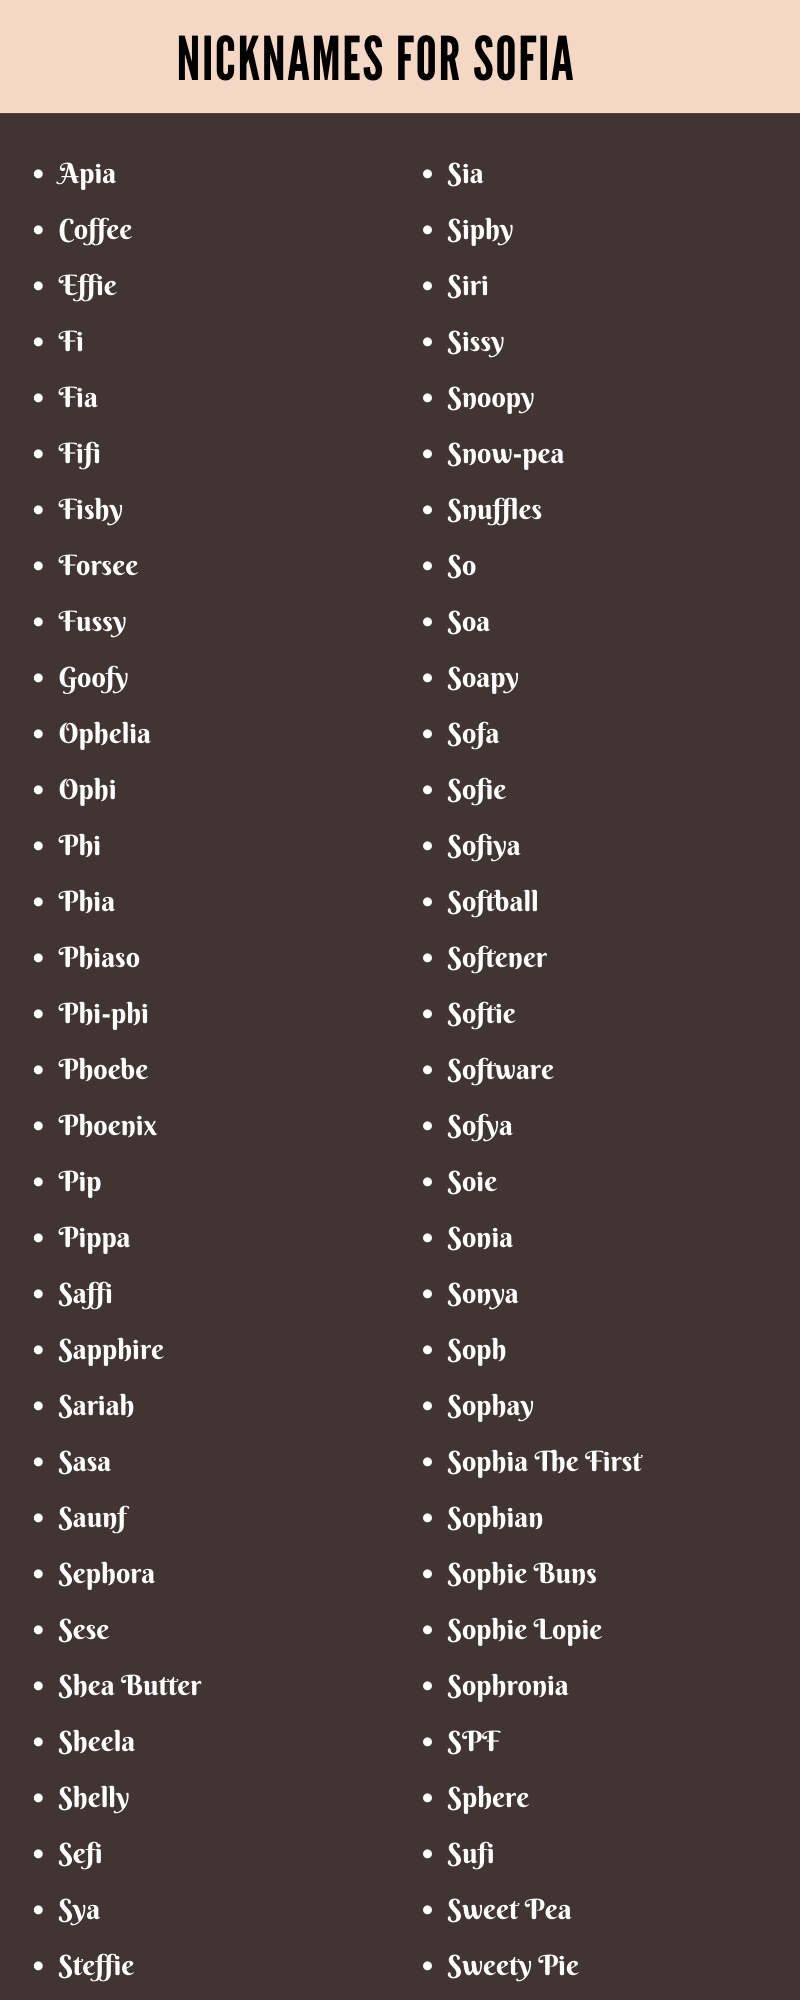 Nicknames for Sofia